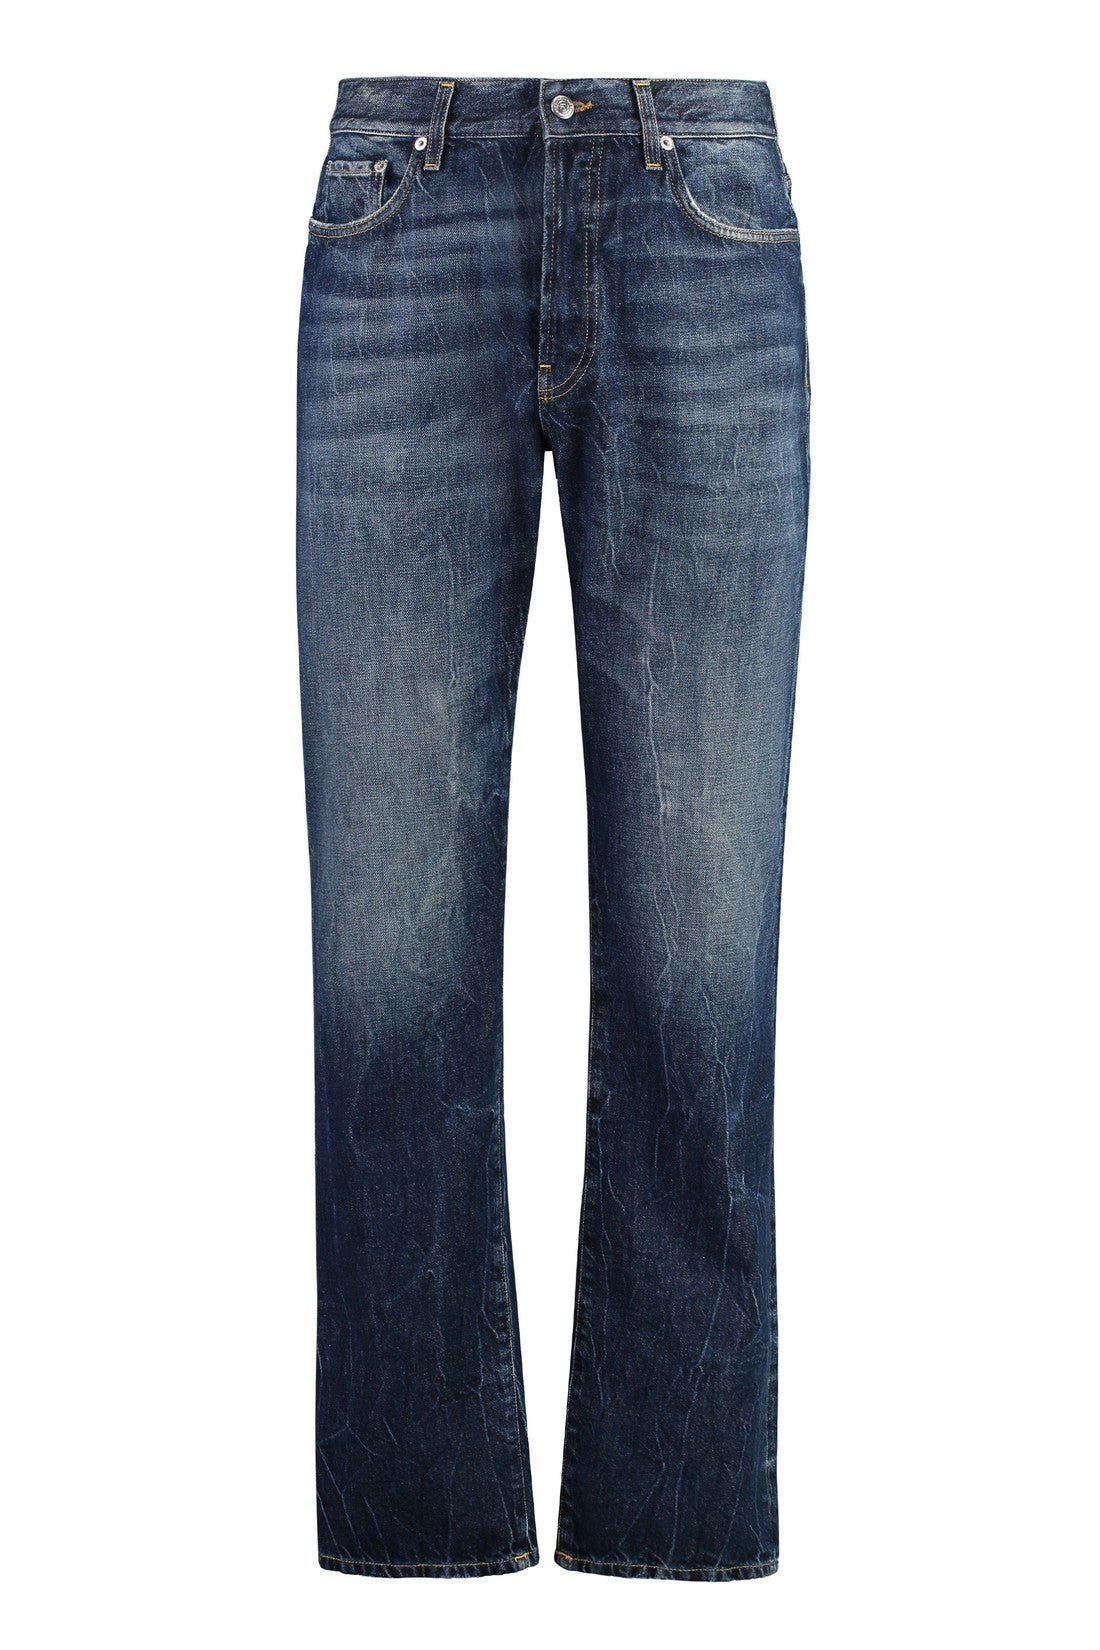 Department 5-OUTLET-SALE-Bowl 5-pocket straight-leg jeans-ARCHIVIST